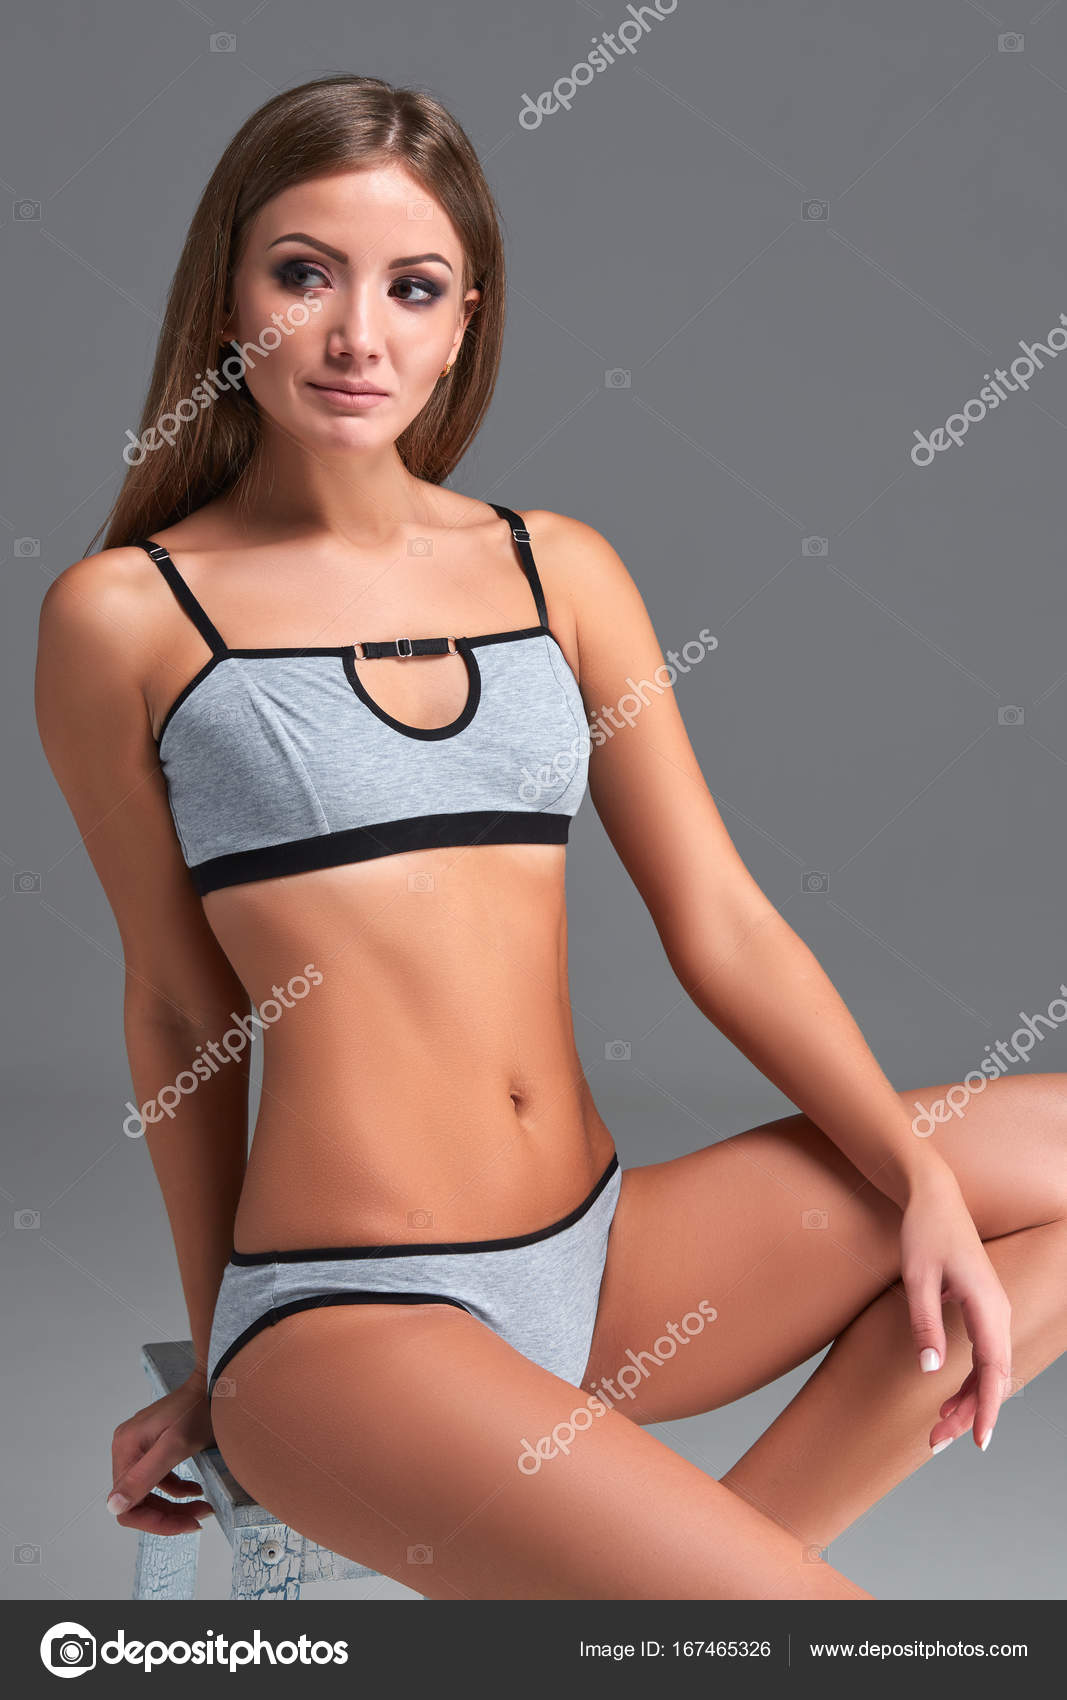 Menina bonita em roupas íntimas esportivas isolado no fundo cinza fotos,  imagens de © nazarov.dnepr@gmail.com #167465326